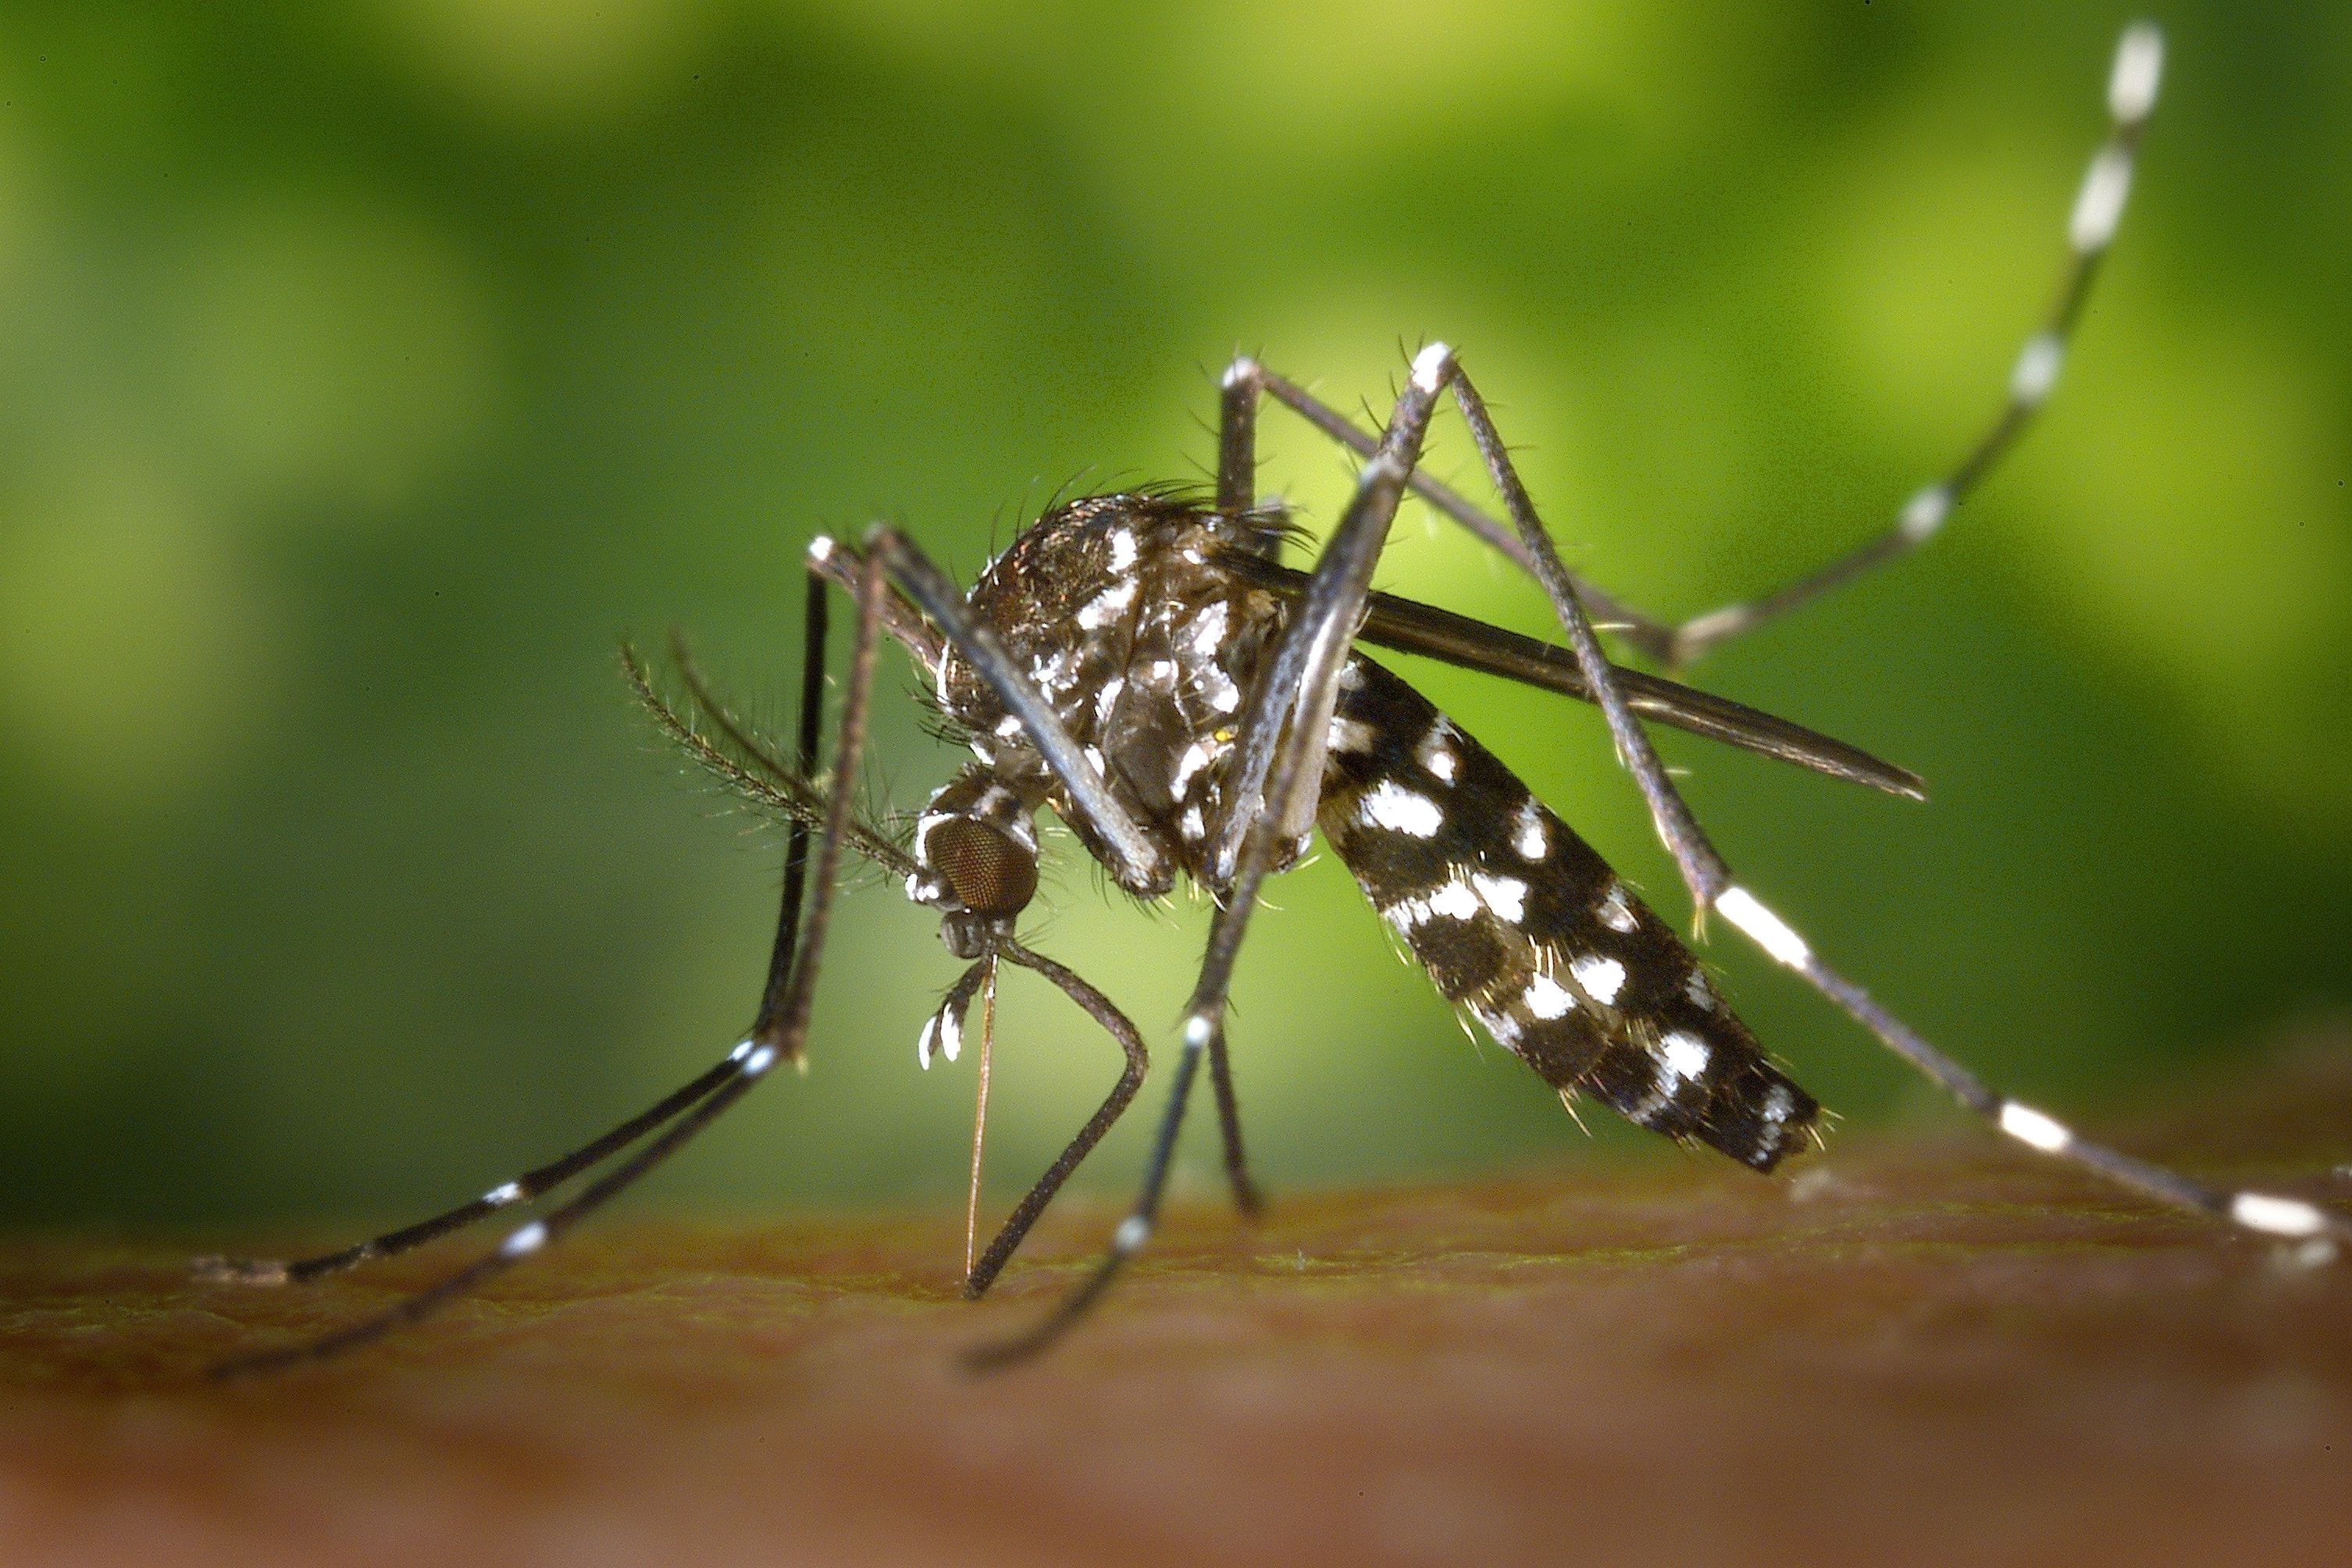 Kenali Gejala Demam Berdarah Dengue yang Perlu Diwaspadai 